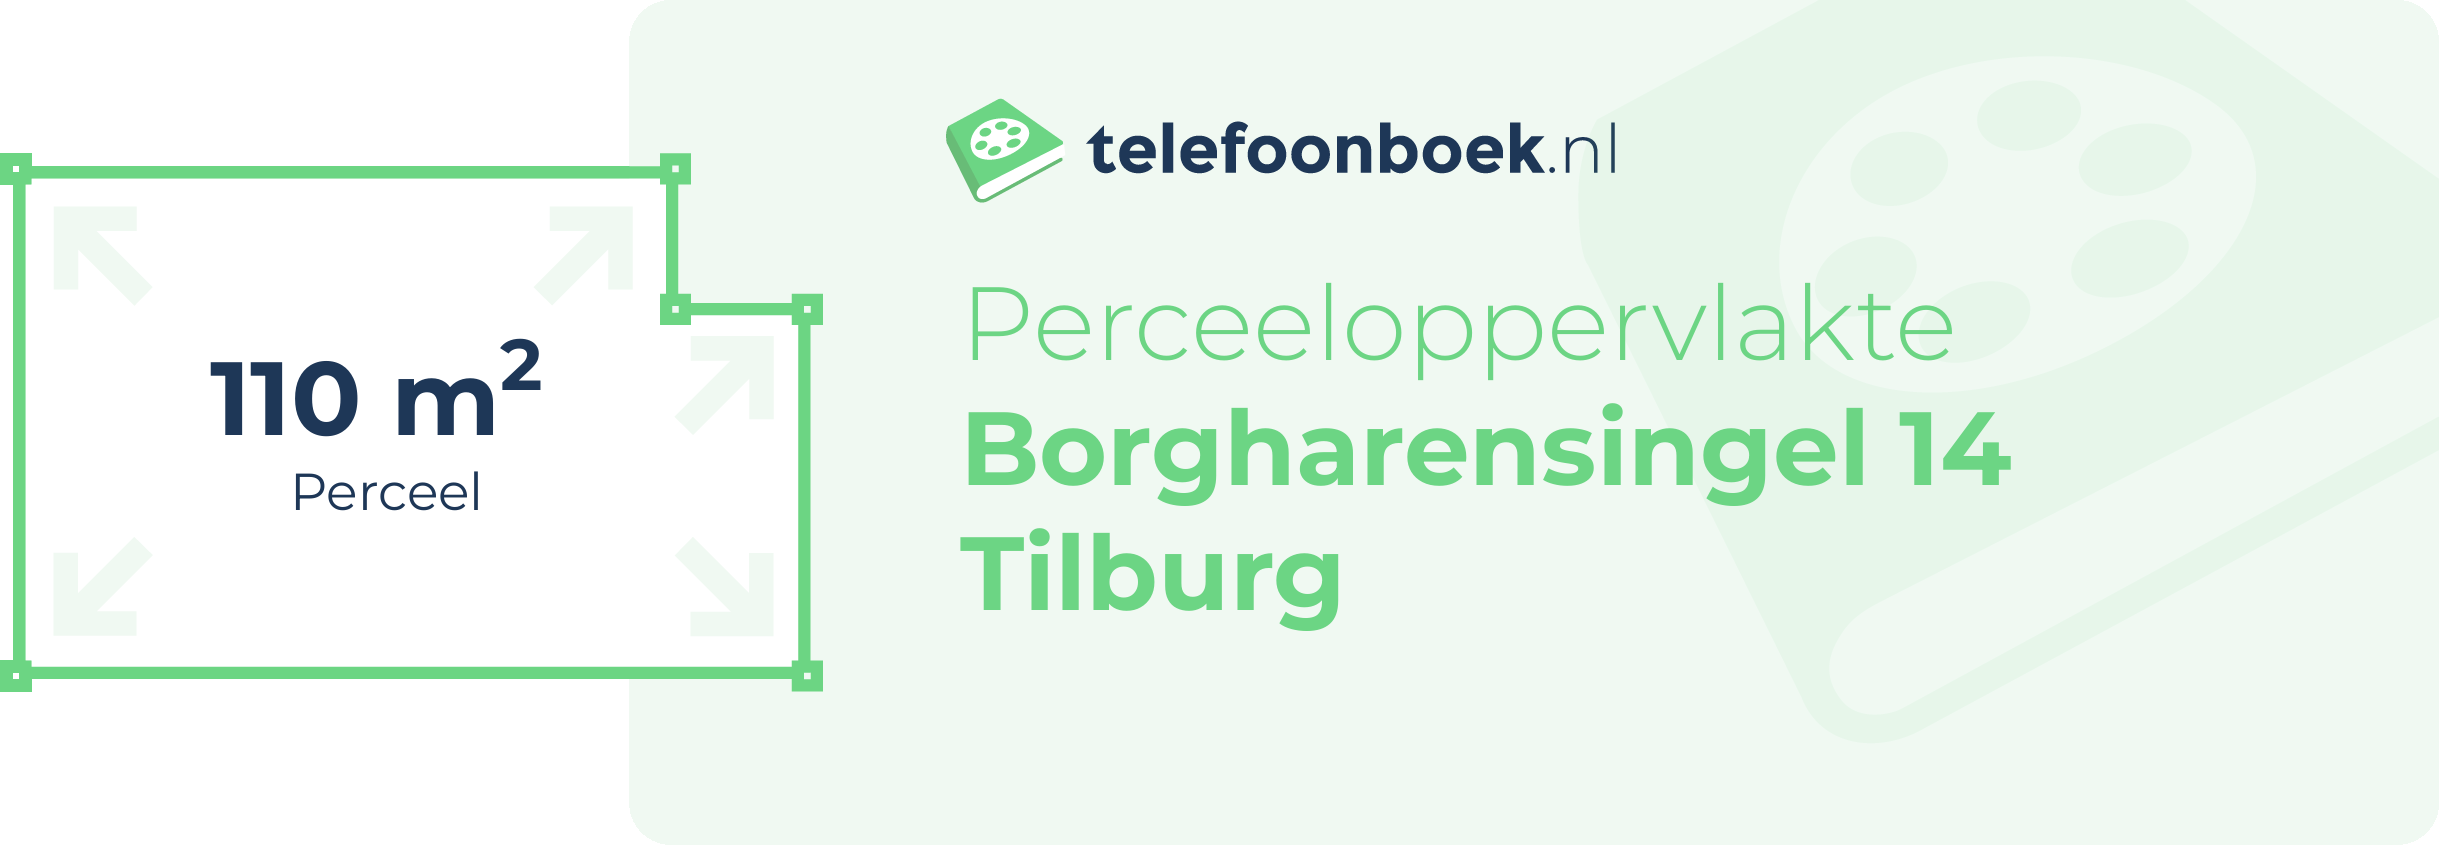 Perceeloppervlakte Borgharensingel 14 Tilburg